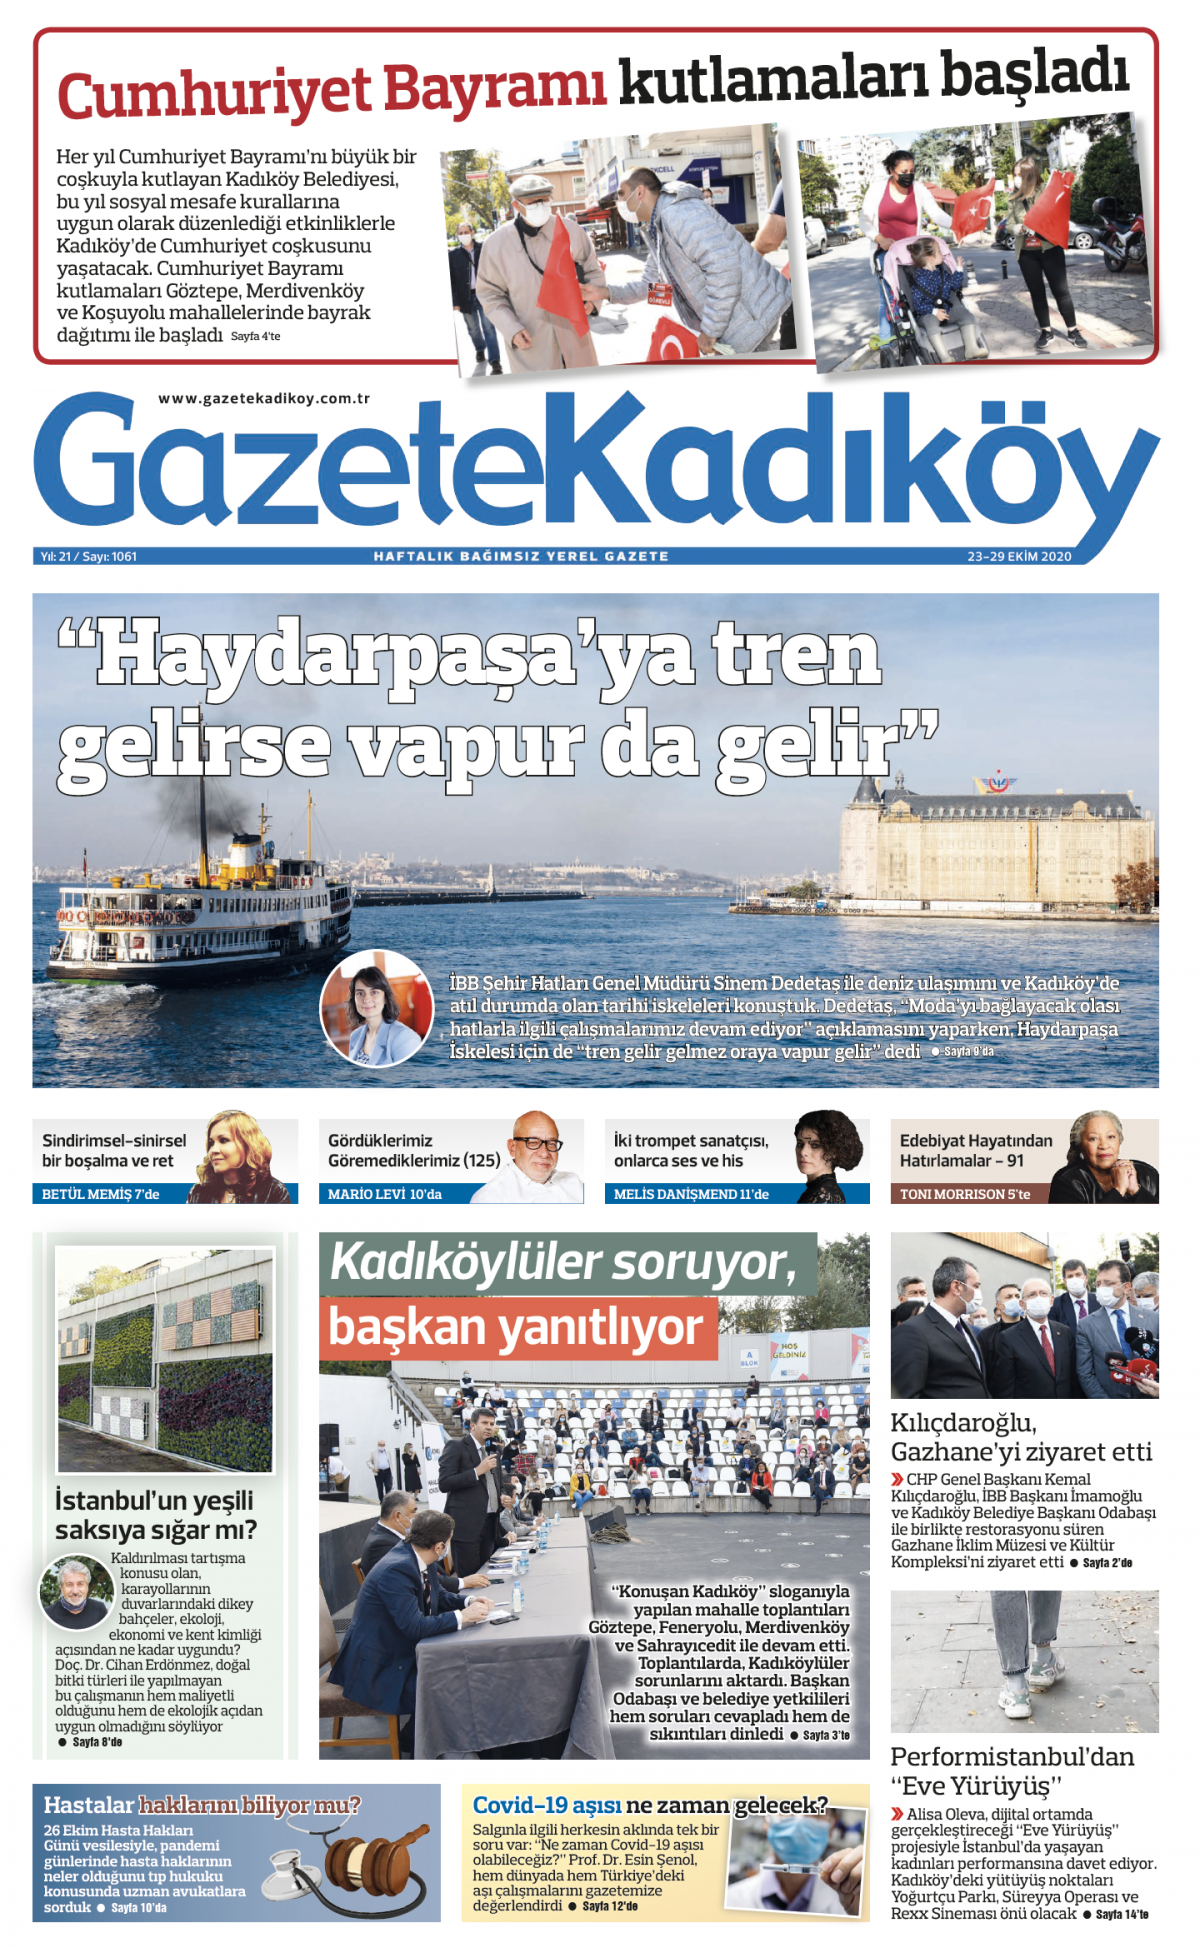 Gazete Kadıköy - 1061.Sayı